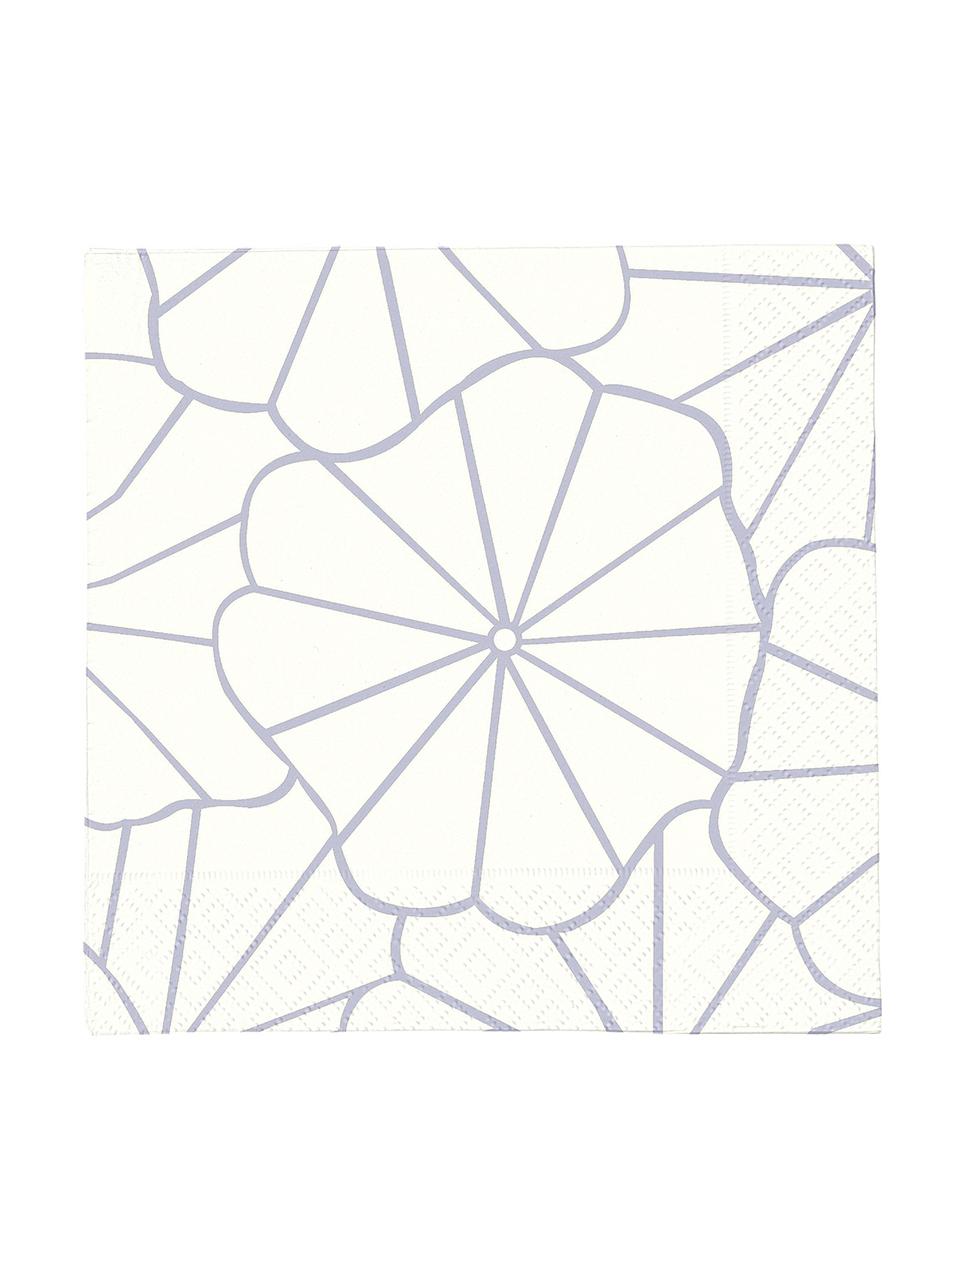 Serviettes en papier Code Dori, 20 pièces, Blanc cassé, couleur argentée